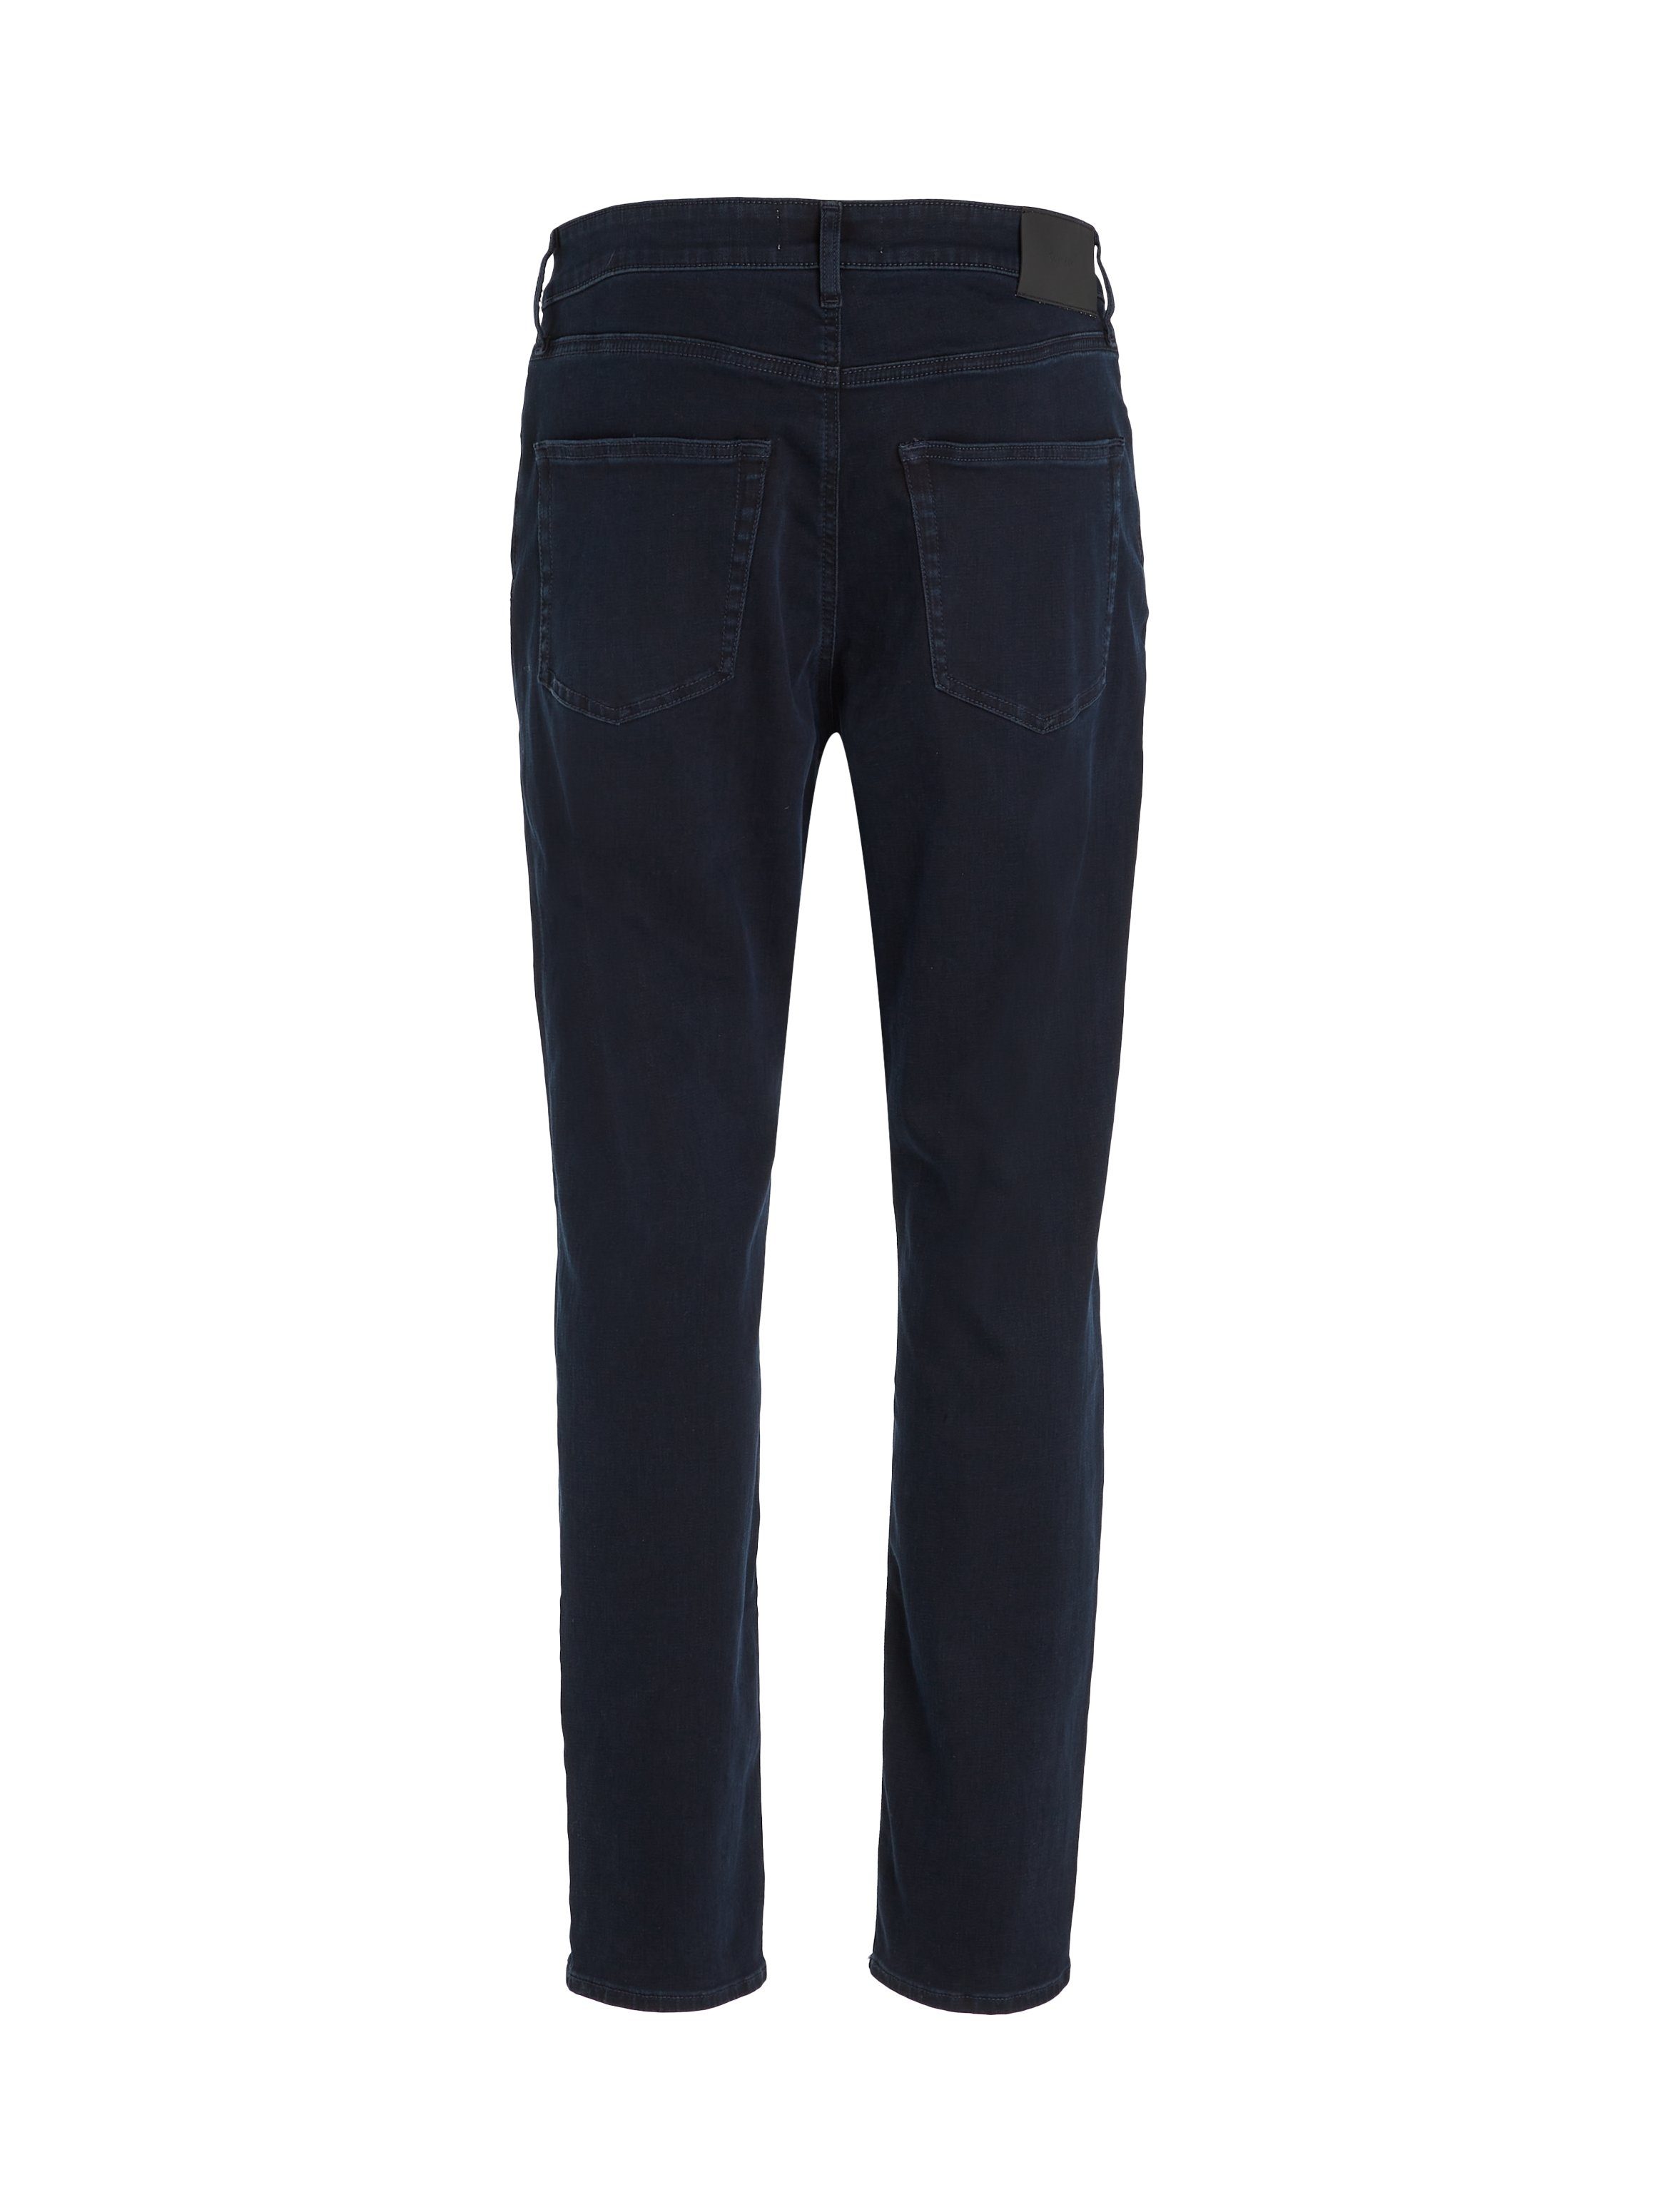 Jeans Markenlabel Calvin Gerade BLACK mit Klein BLUE TAPERED